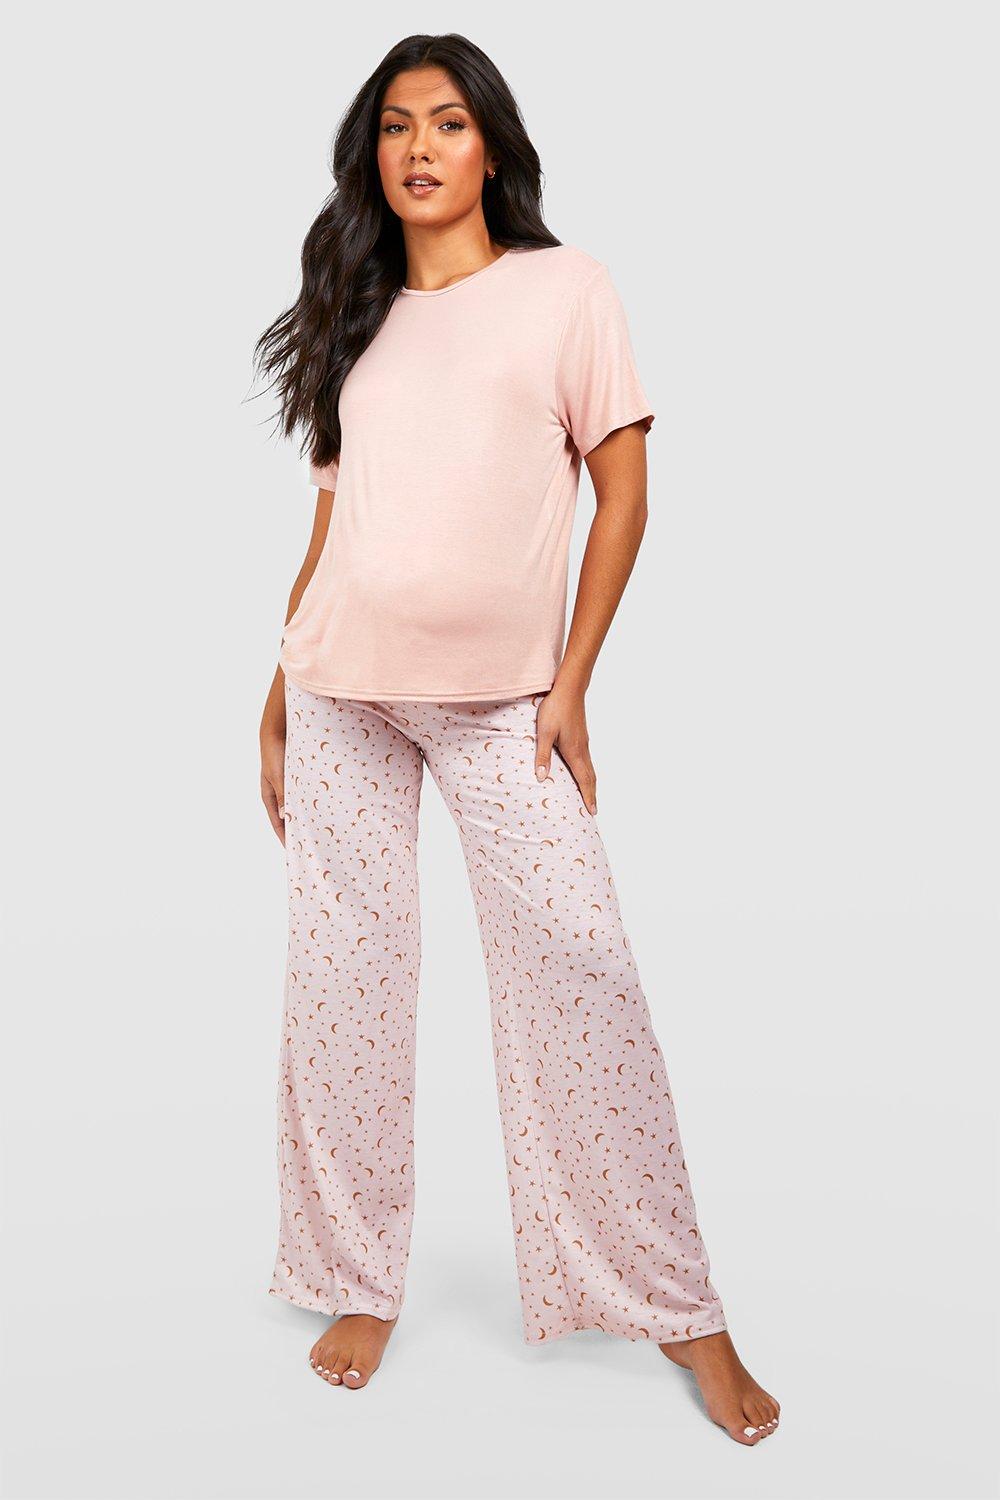 Maternity Star Print Pyjama Set